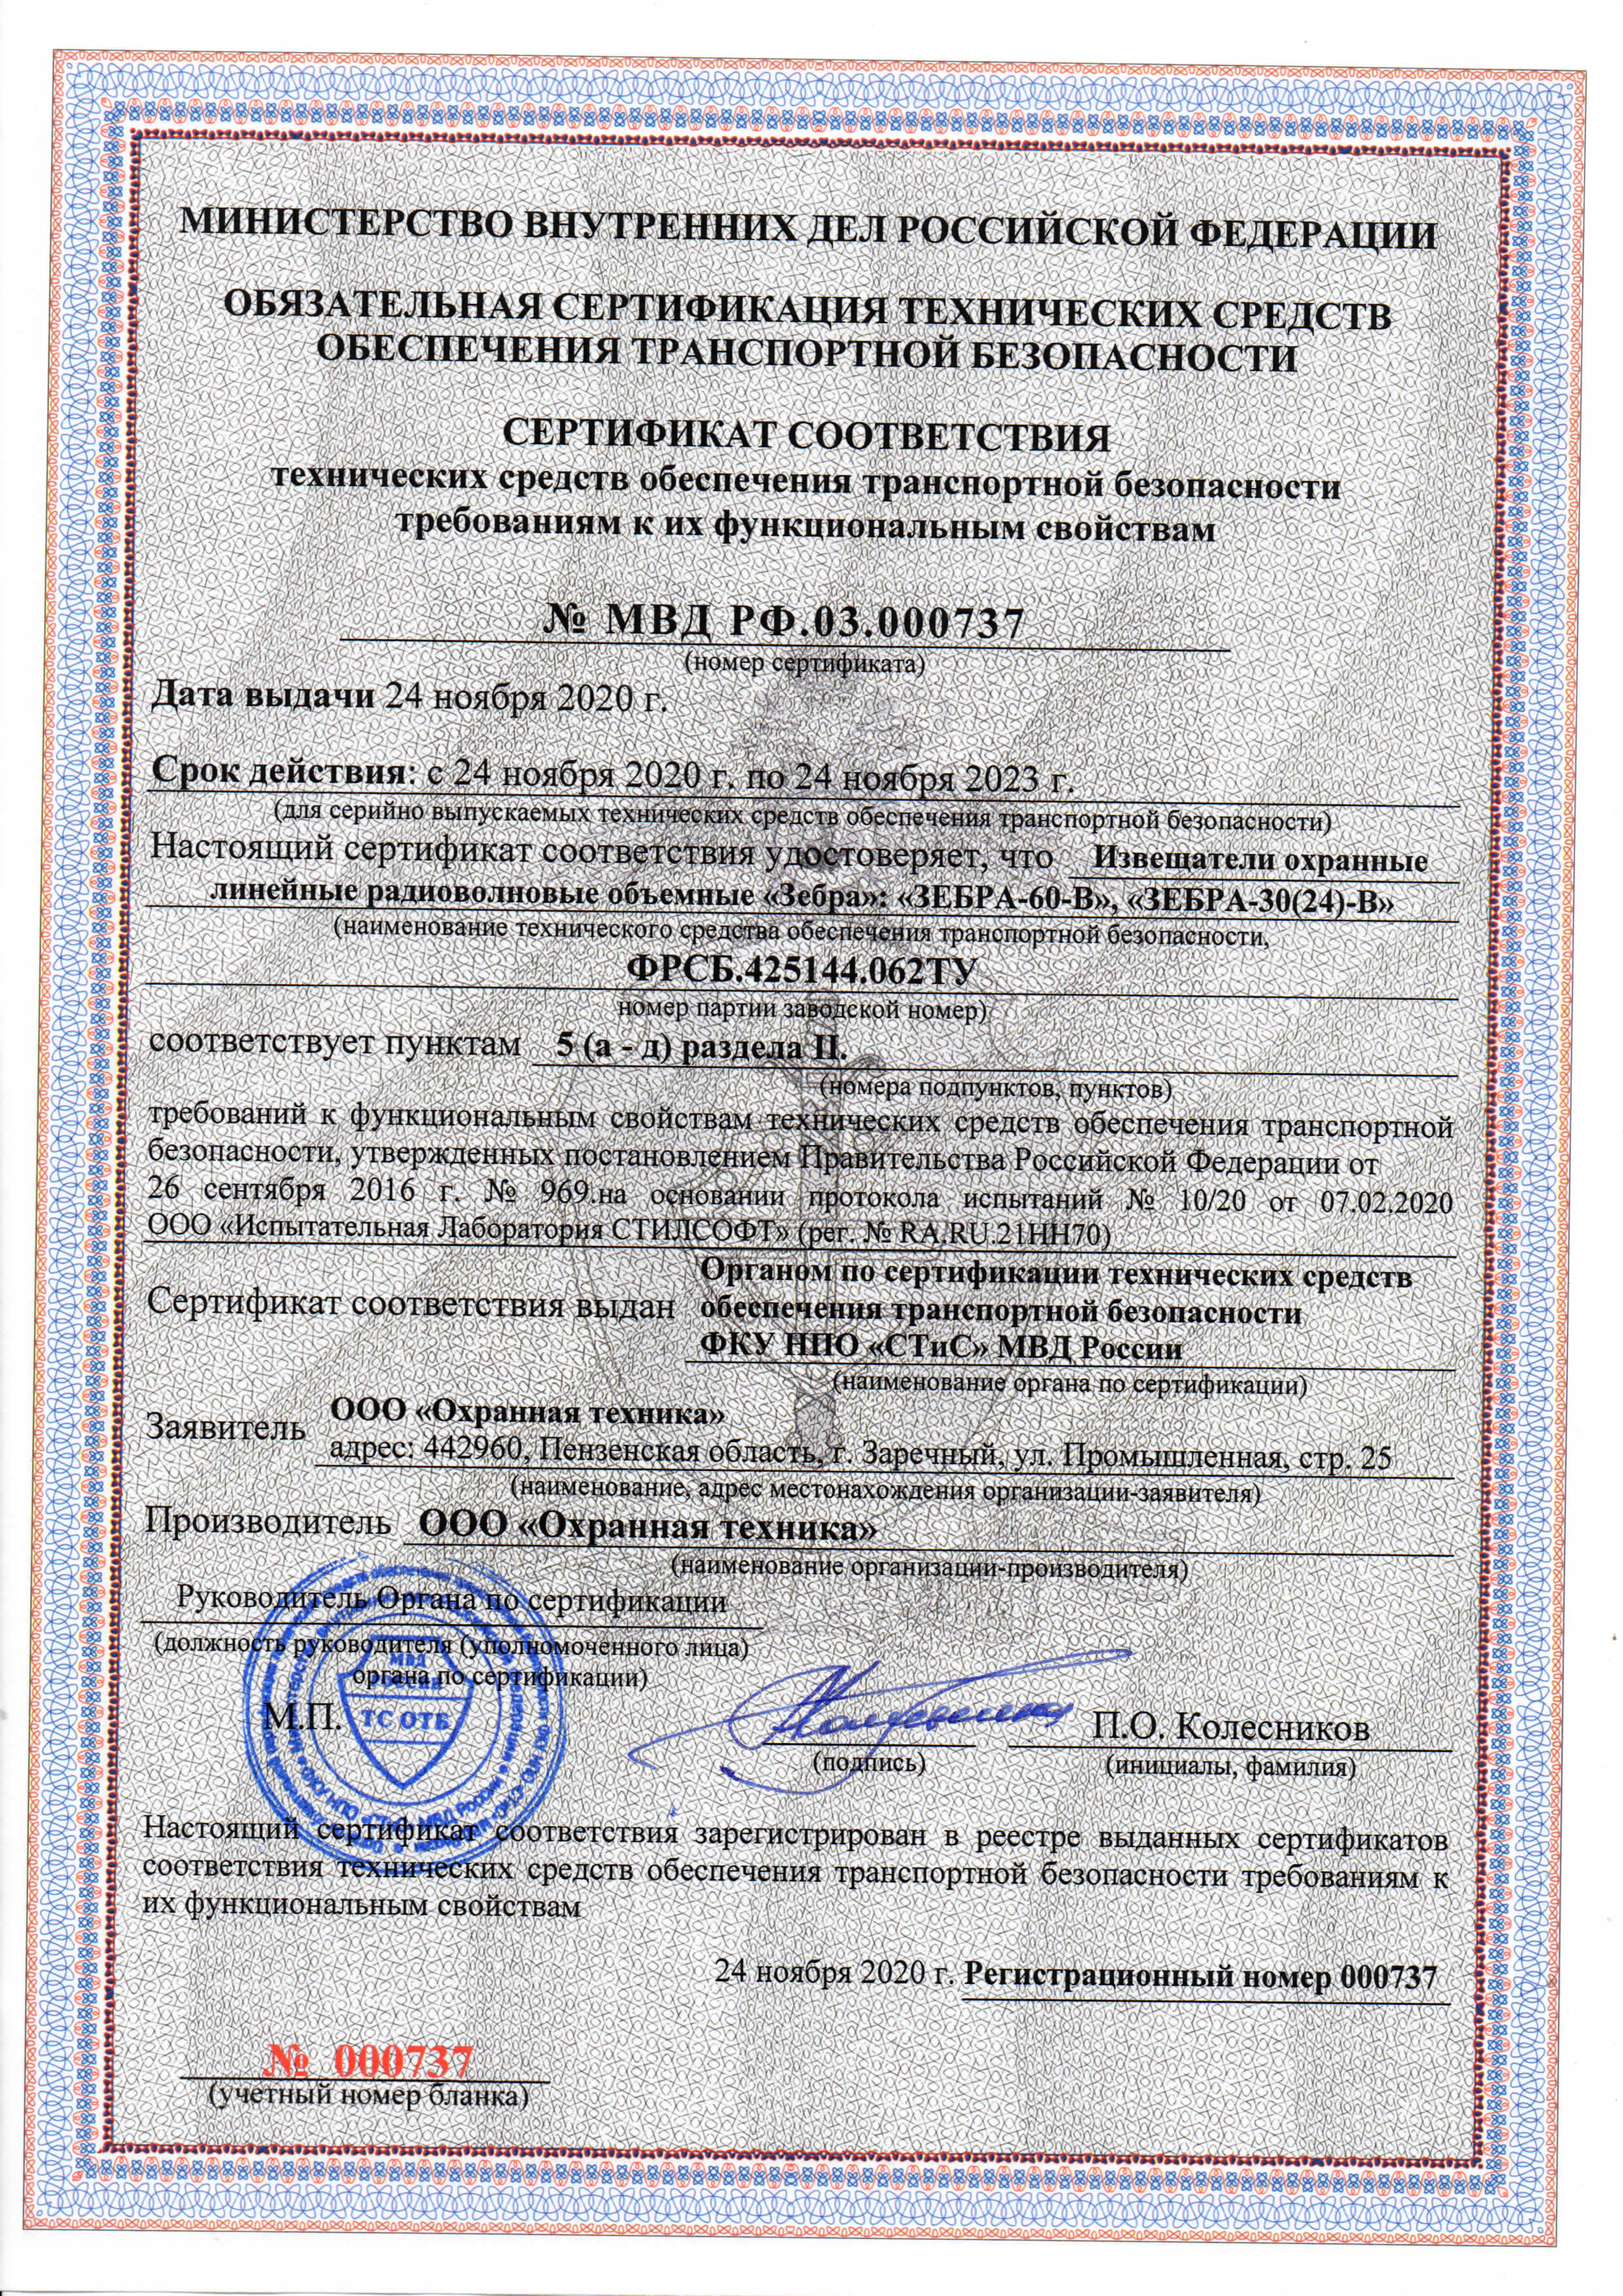 Сертификаты соответствия ТСО транспортной безопасности